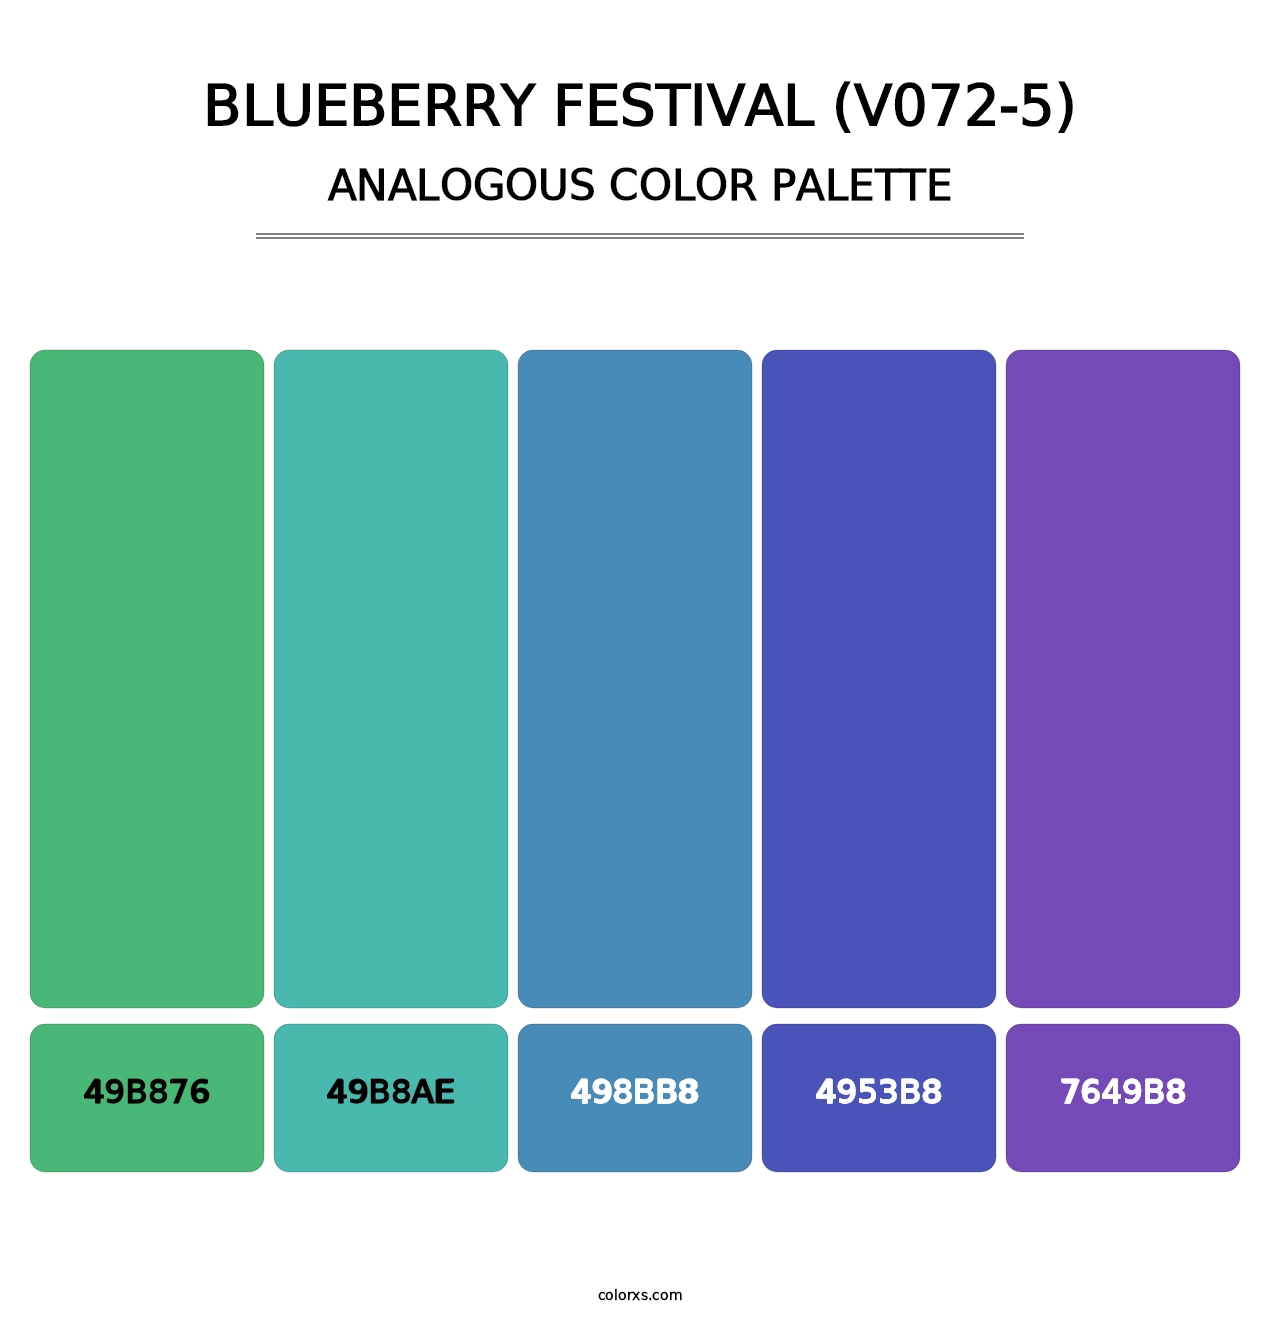 Blueberry Festival (V072-5) - Analogous Color Palette